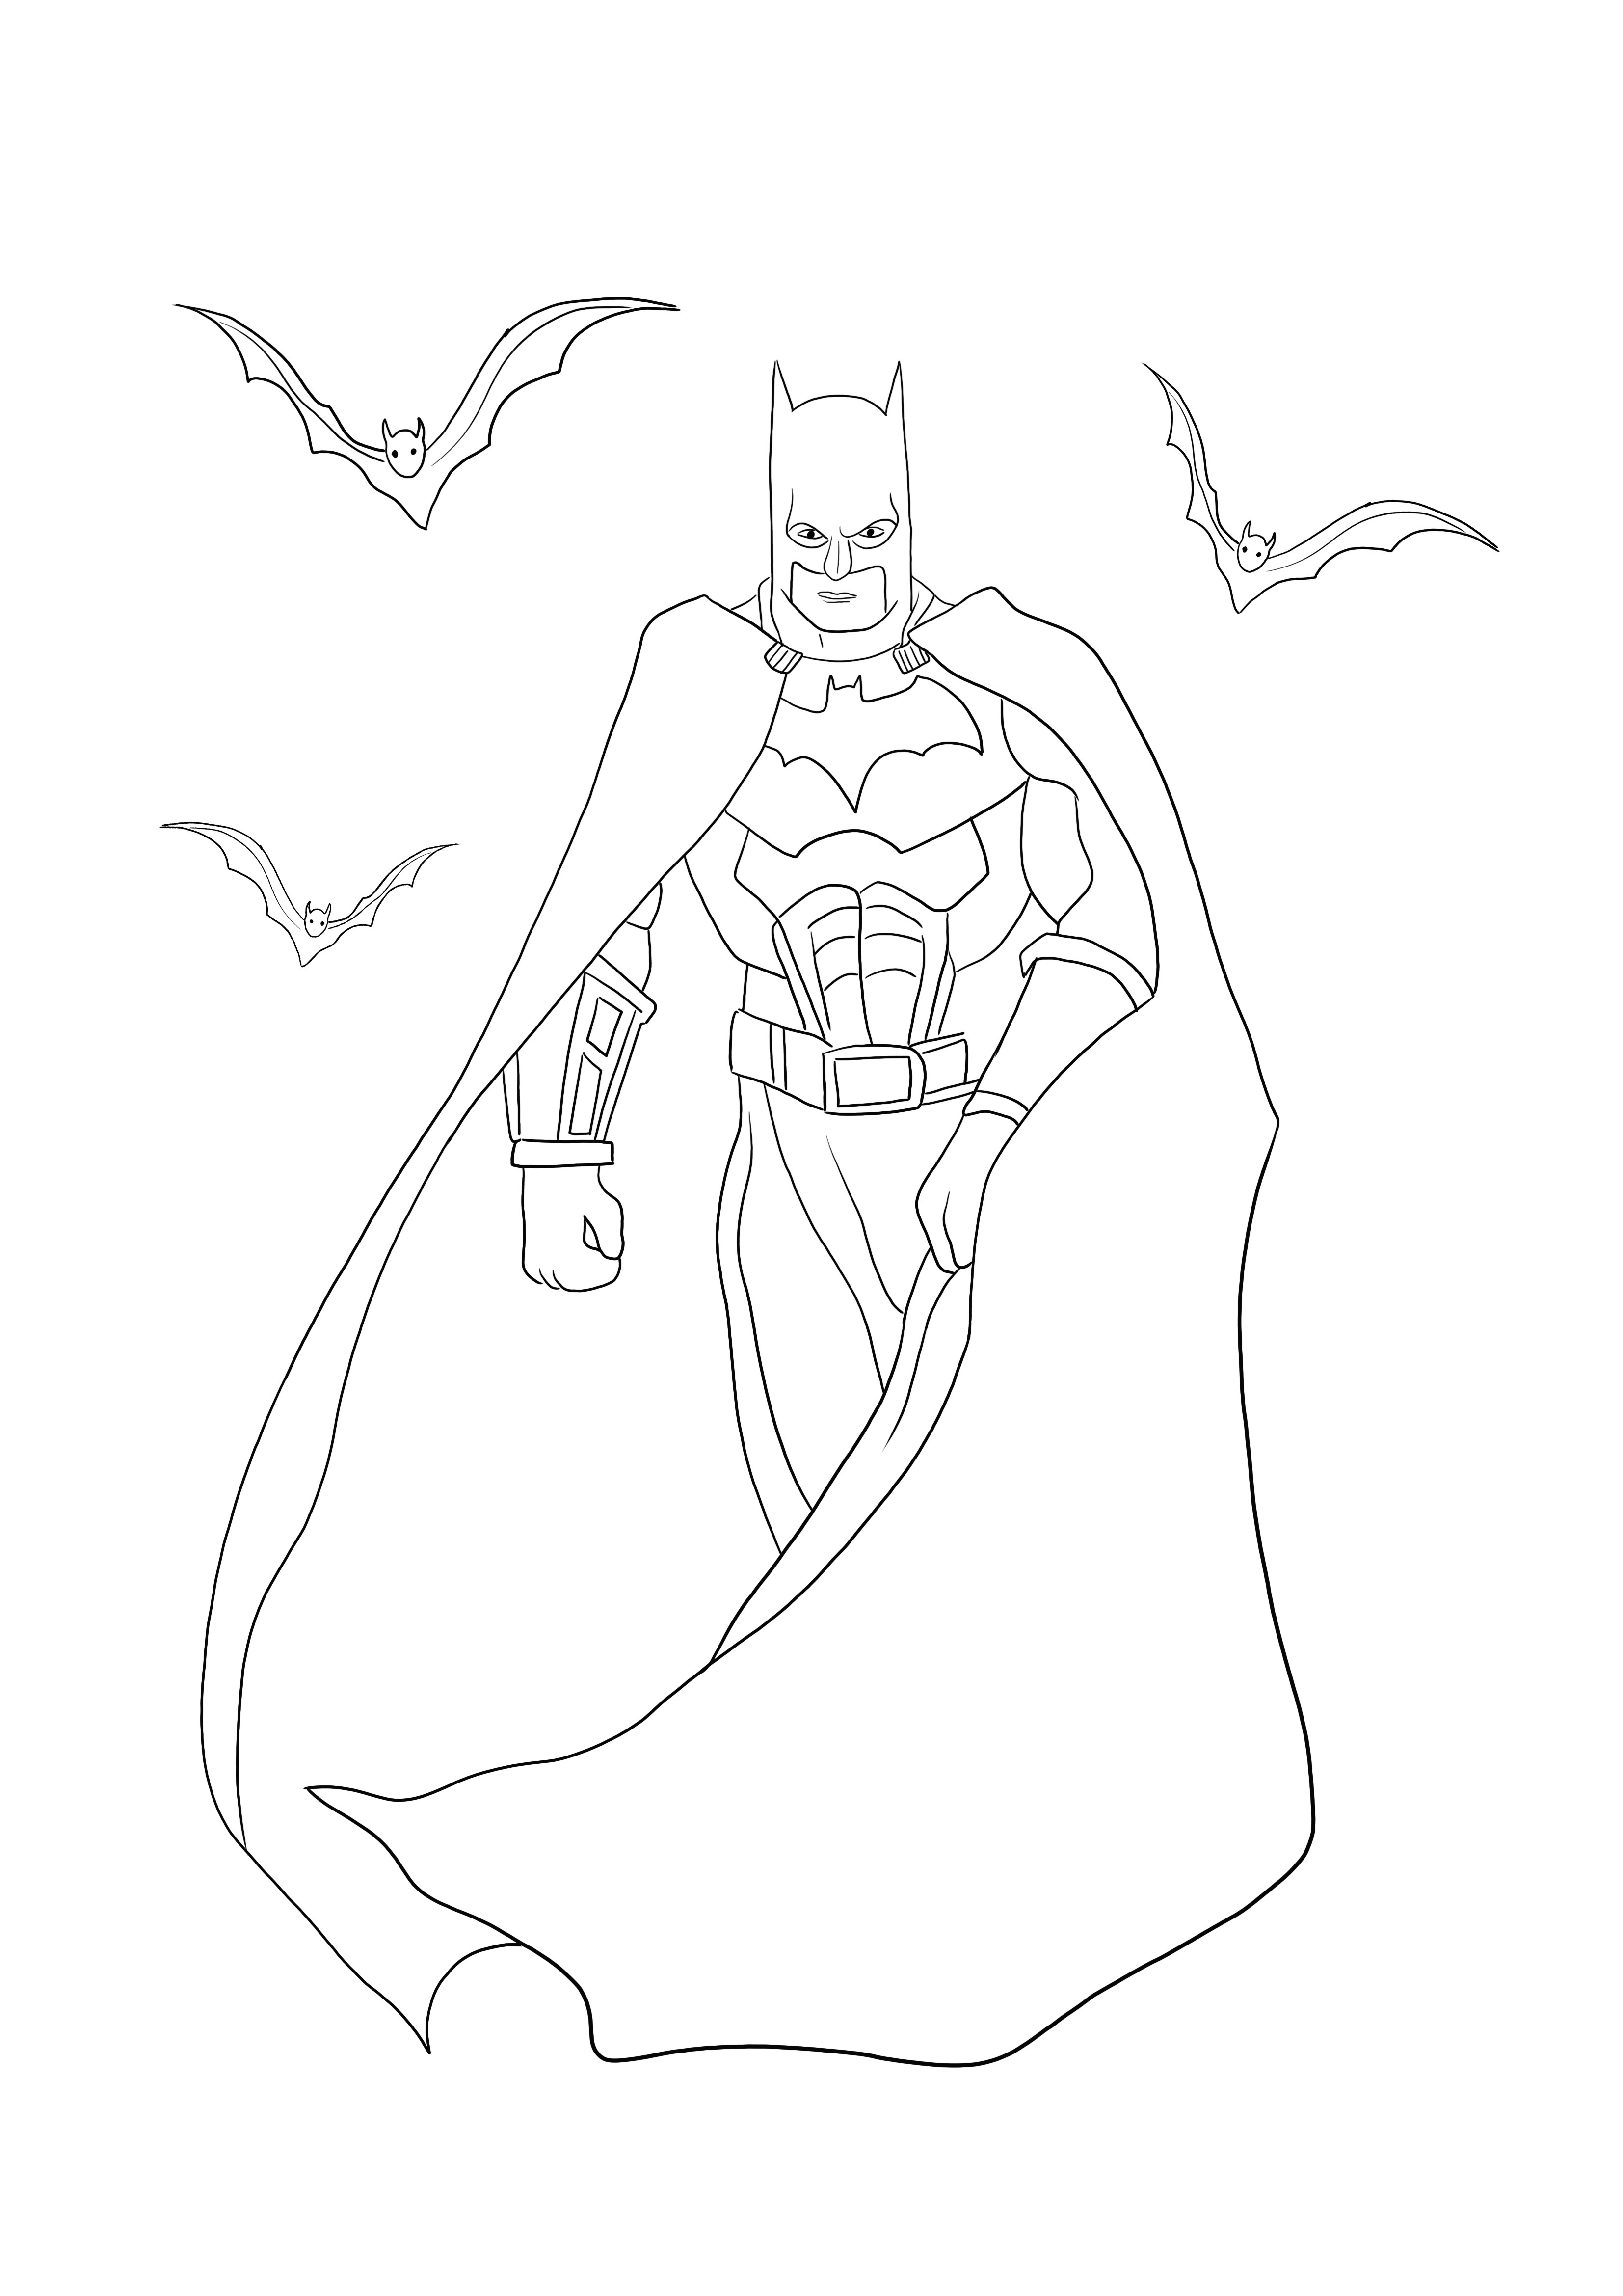 La disegni da colorare di Batman con pipistrelli può essere scaricata o stampata gratuitamente per divertirsi